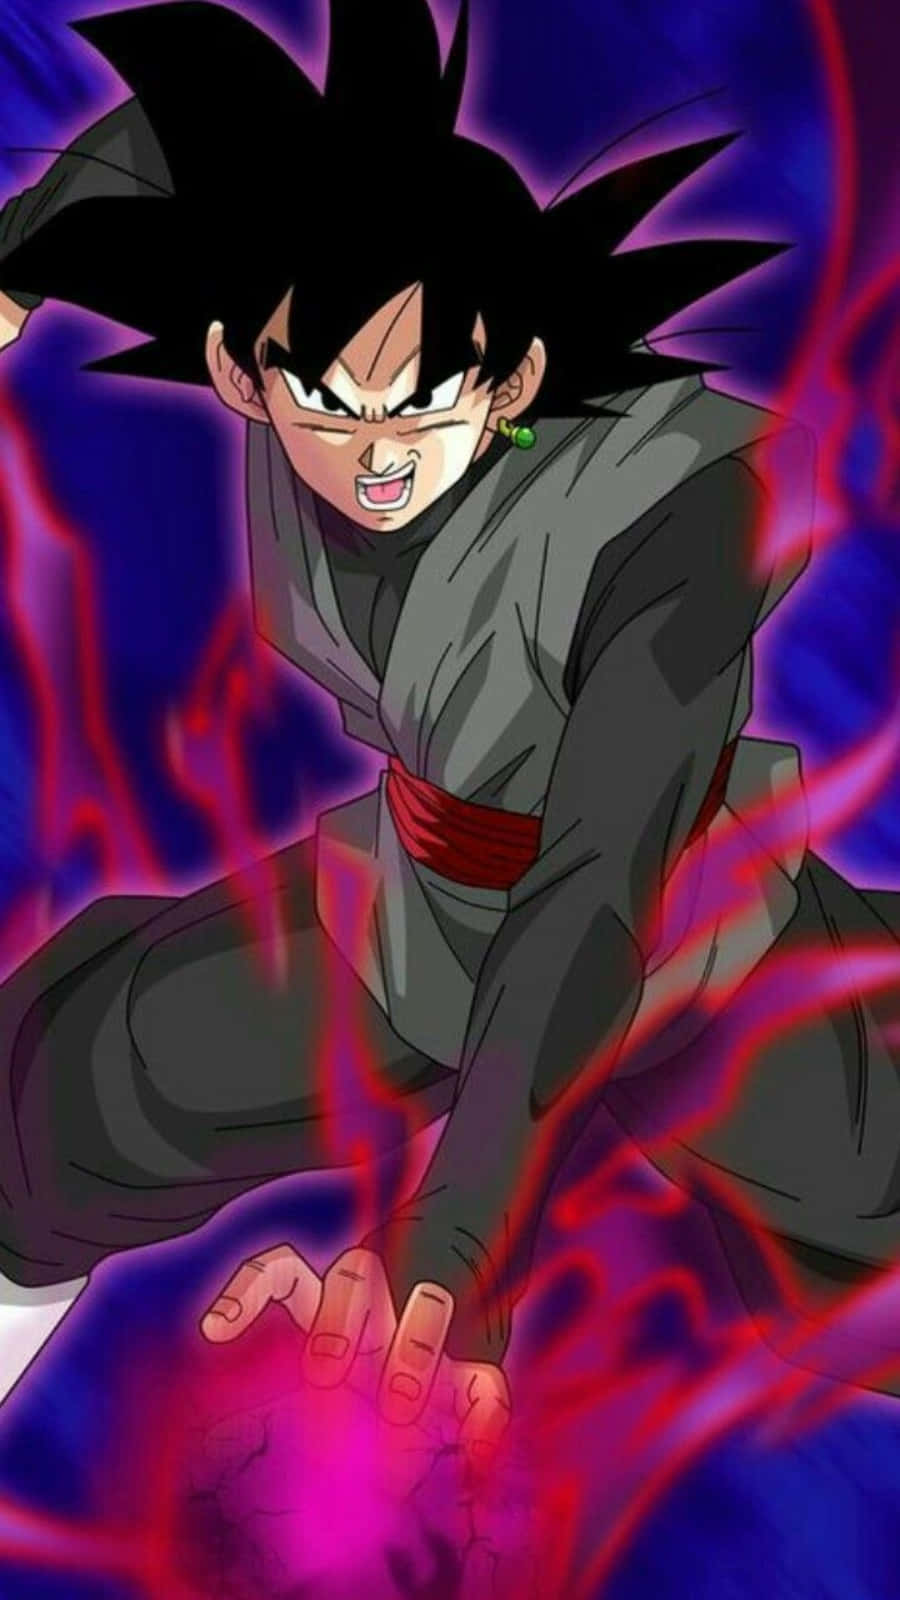 Supersaiyan Rose Goku Black animation.